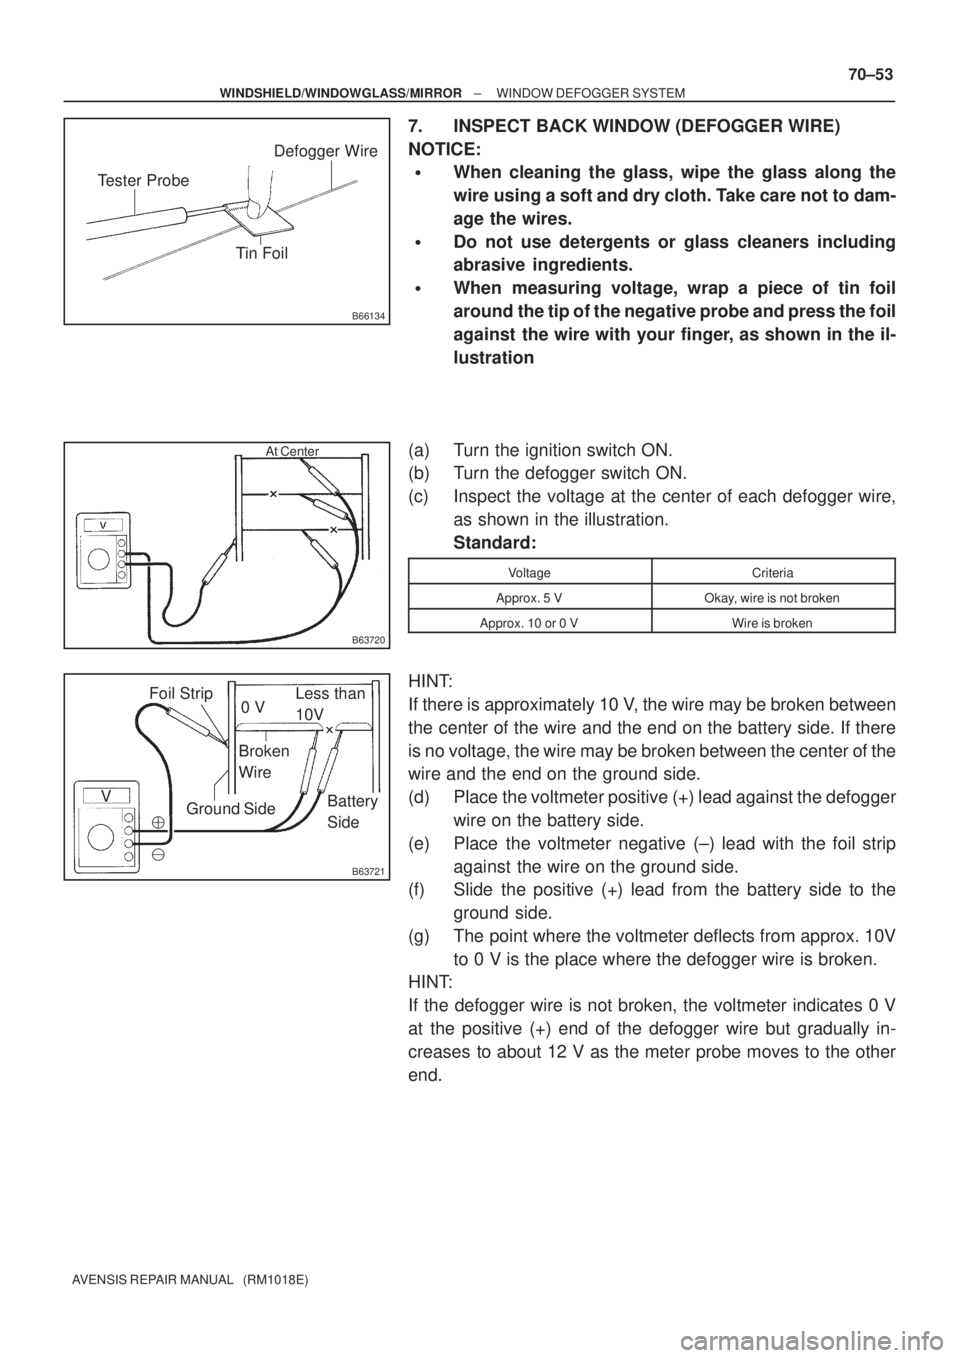 TOYOTA AVENSIS 2005  Service Repair Manual B66134
Tester Probe
Tin FoilDefogger Wire
B63720
At Center
V
B63721
0 V
Broken
WireLess than
10V
Battery
Side Ground SideFoil Strip


± WINDSHIELD/WINDOWGLASS/MIRRORWINDOW DEFOGGER SYSTEM
70±53
AV